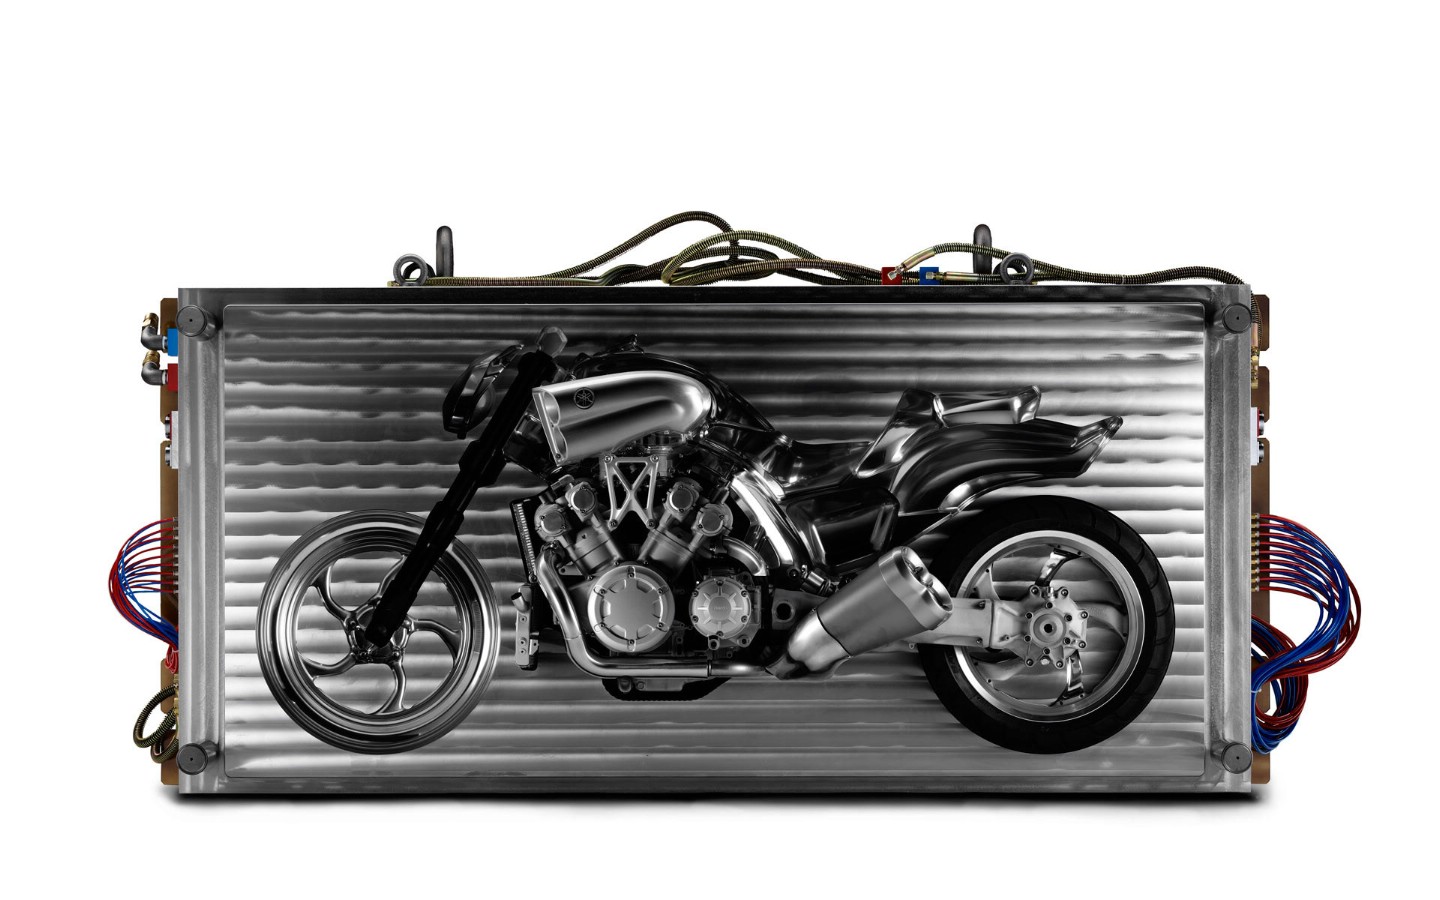 壁纸1440x900概念摩托车 3 17壁纸 概念摩托车壁纸 概念摩托车图片 概念摩托车素材 汽车壁纸 汽车图库 汽车图片素材桌面壁纸